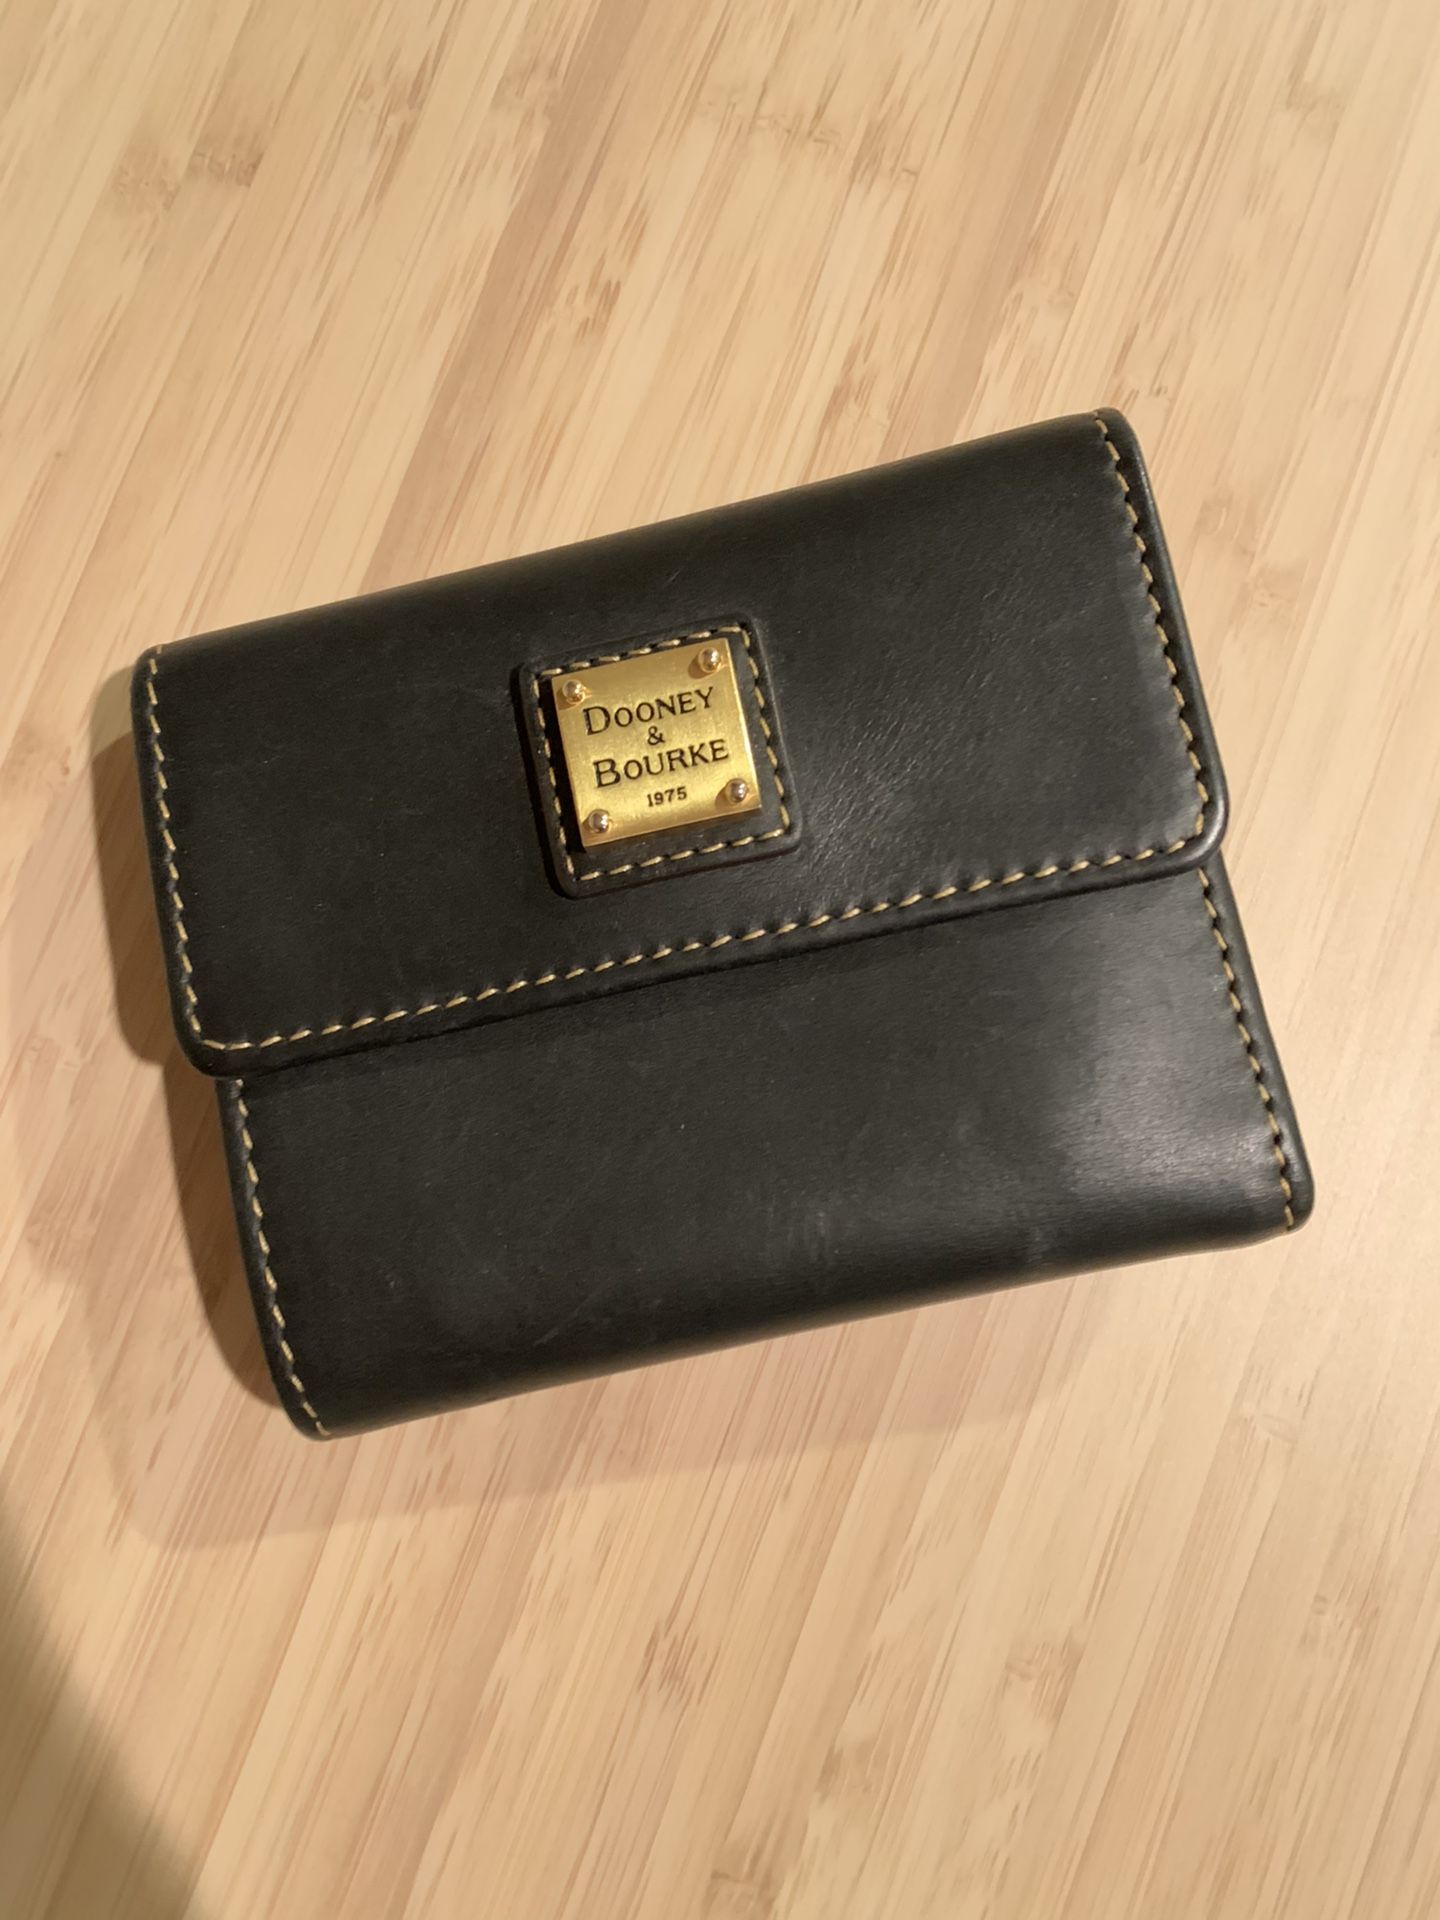 Dooney & Bourke Small Flap Wallet